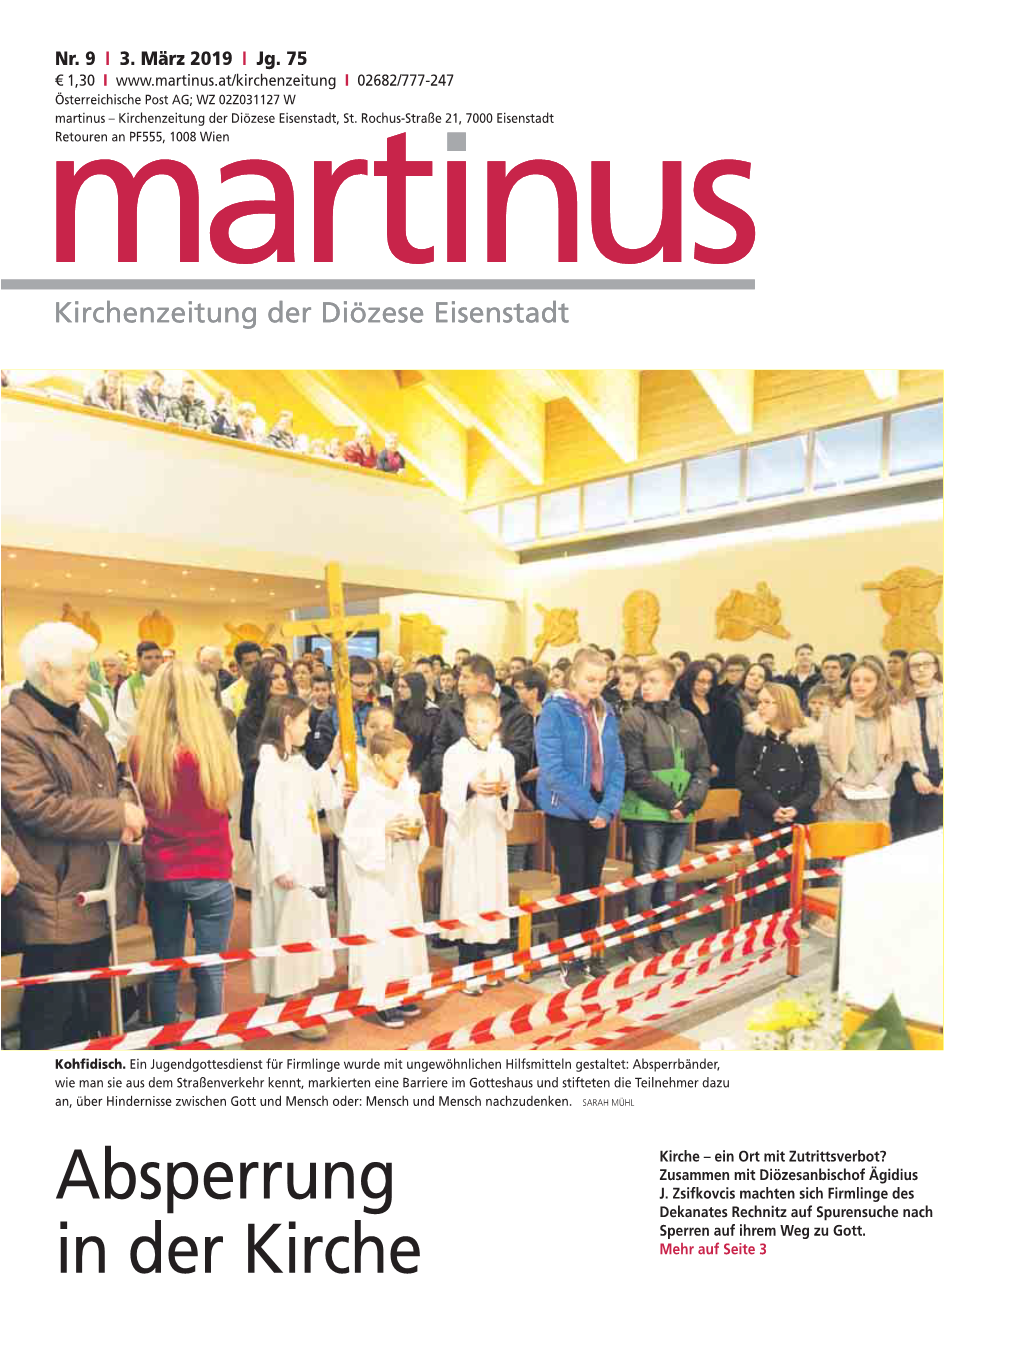 In Martinus Kirchenzeitung